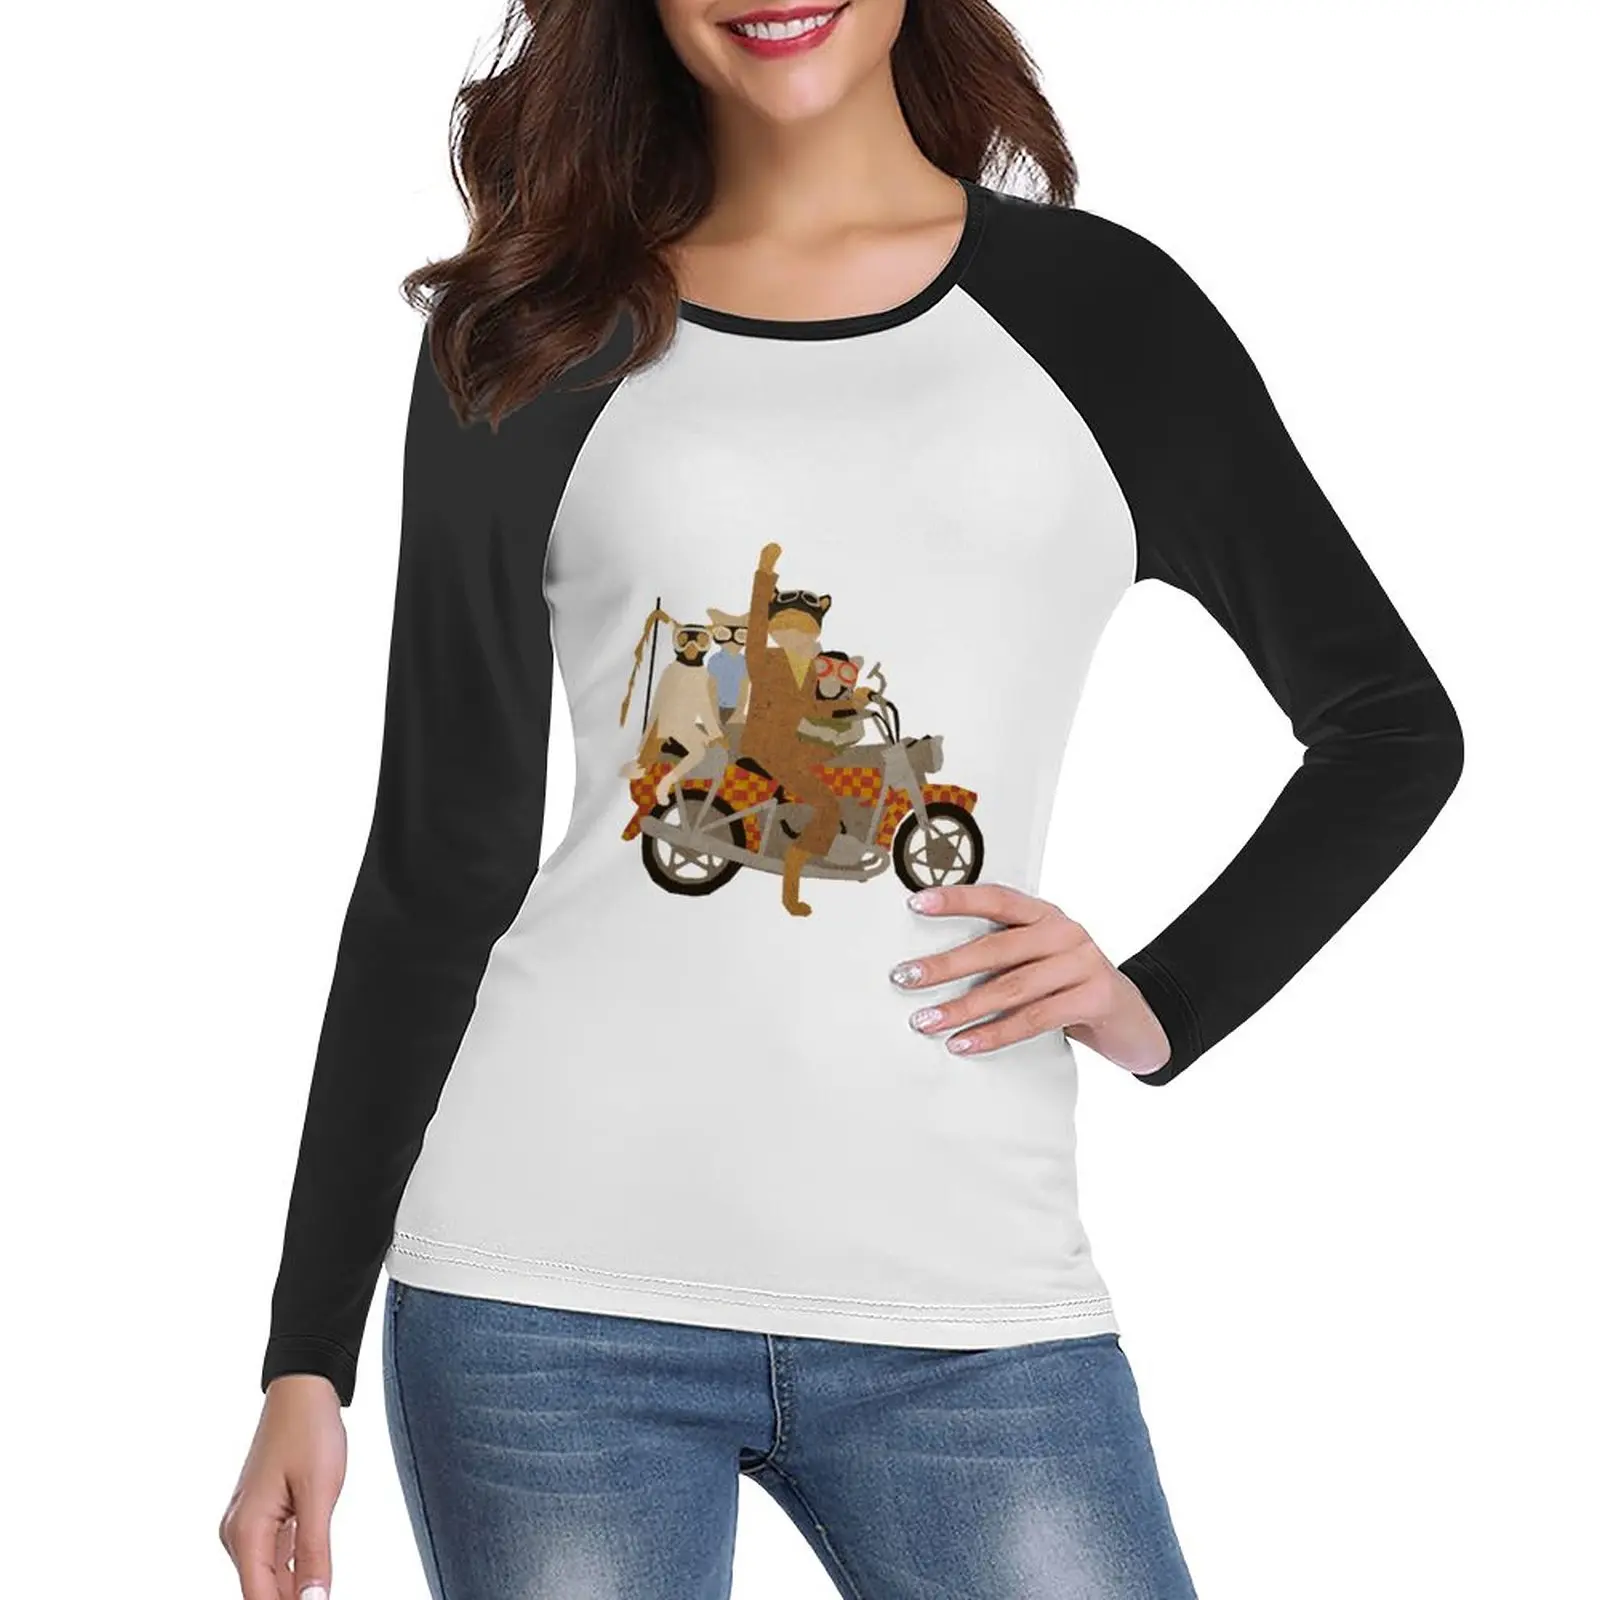 Фантастическая футболка Mr.Motorcycle с длинным рукавом, спортивная рубашка, забавная футболка, тренировочные рубашки для женщин, свободный крой